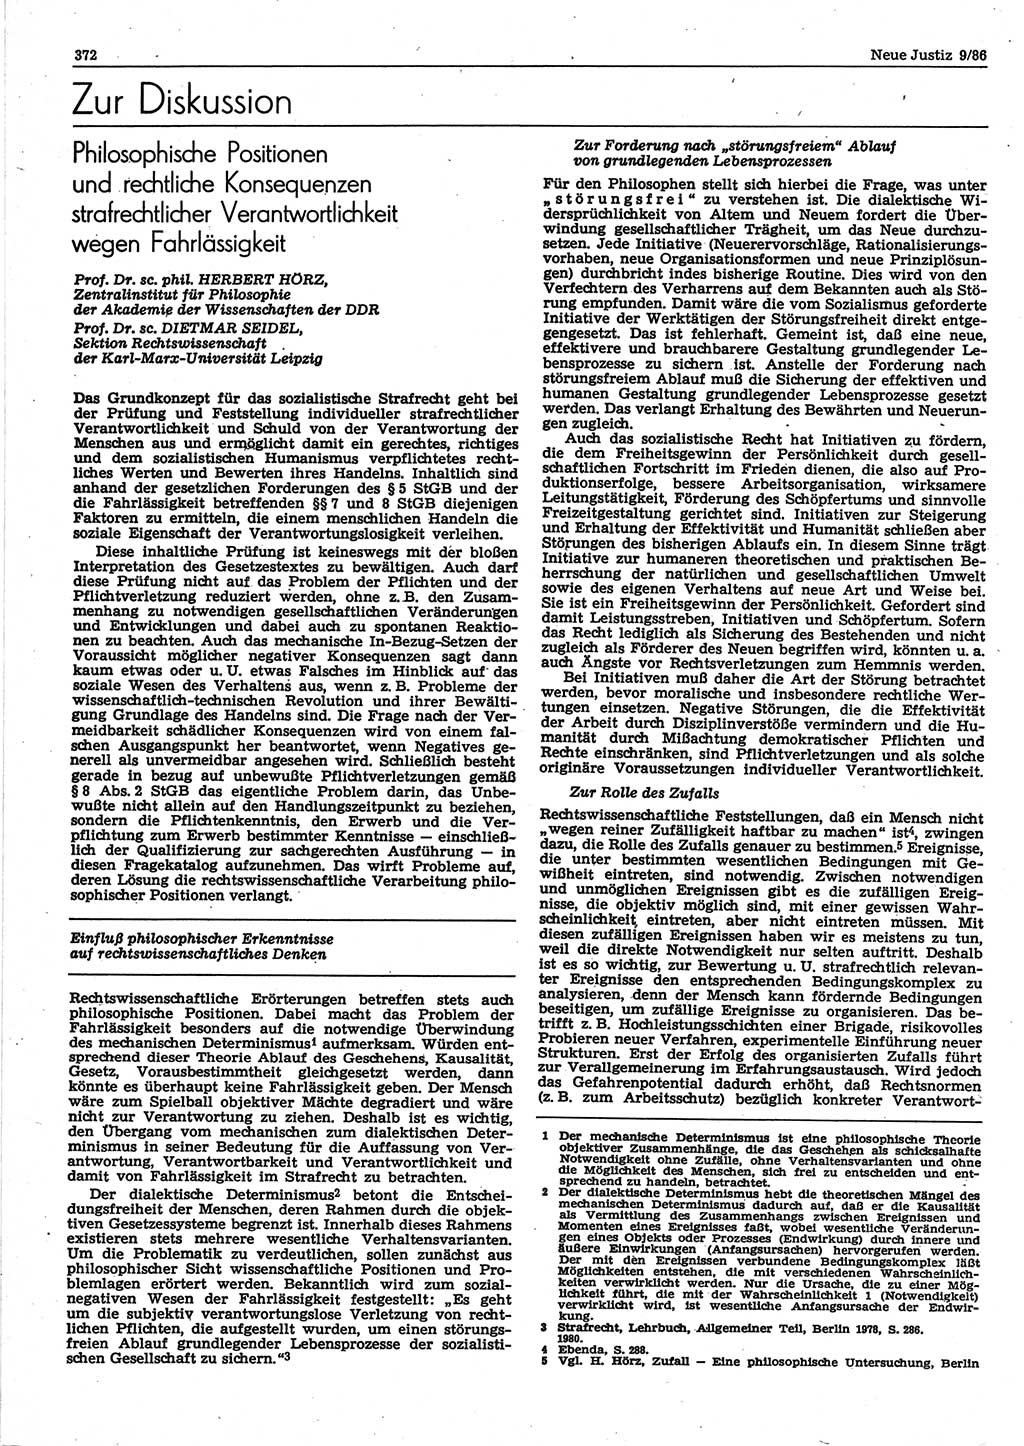 Neue Justiz (NJ), Zeitschrift für sozialistisches Recht und Gesetzlichkeit [Deutsche Demokratische Republik (DDR)], 40. Jahrgang 1986, Seite 372 (NJ DDR 1986, S. 372)